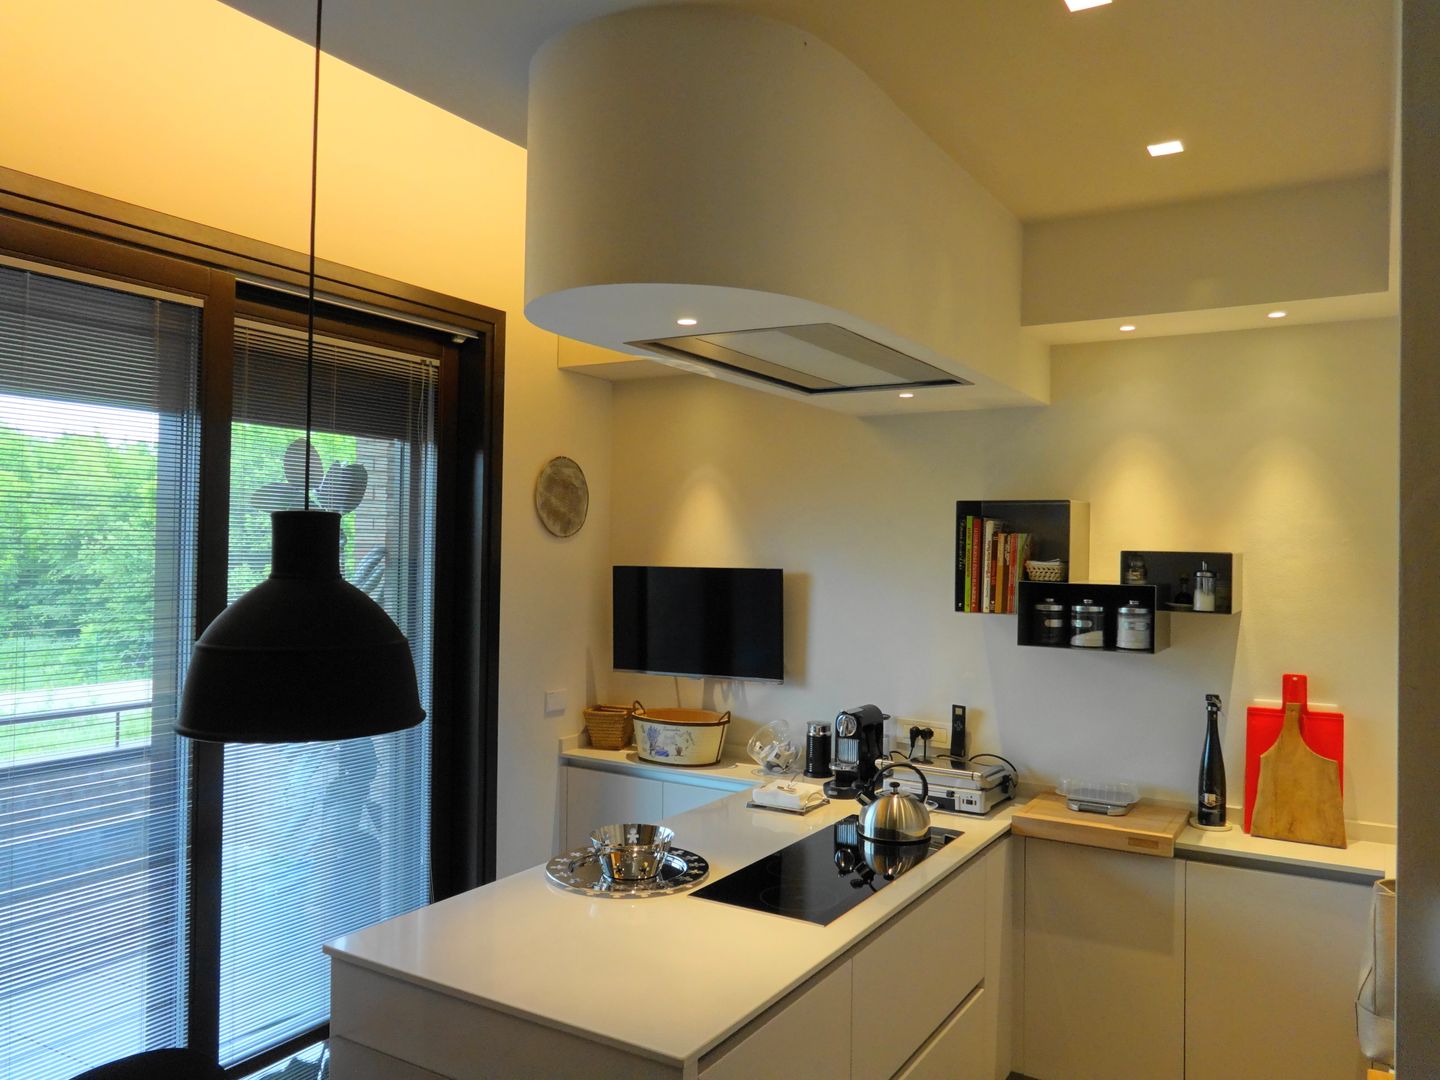 Cucina Mariapia Alboni architetto Cucina moderna cappa cucina,cucina,illuminazione cucina,illuminazione a LED